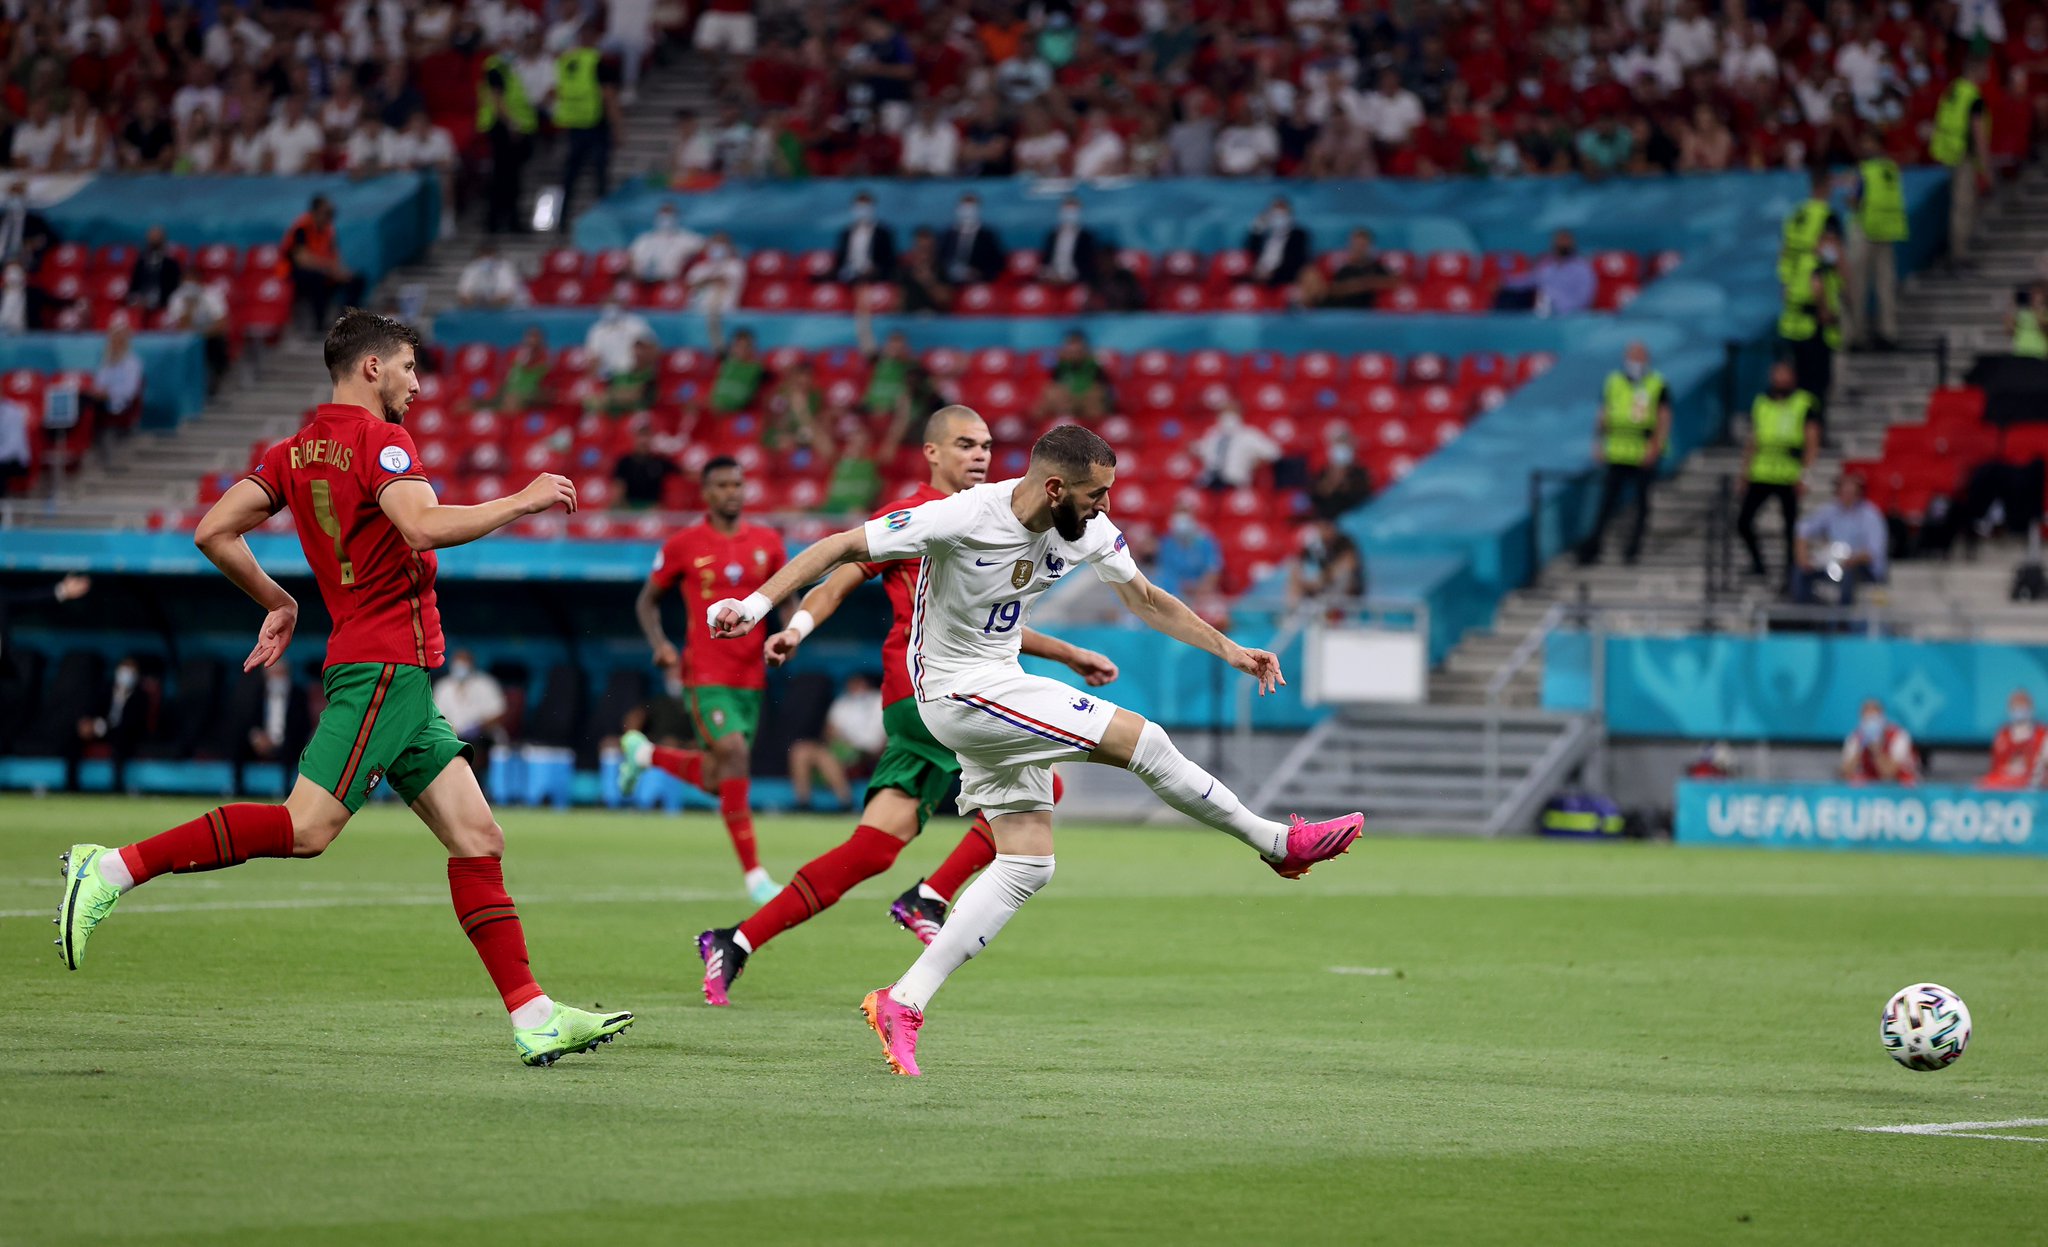 La France finit première du groupe après un match fou contre le Portugal et affrontera la Suisse en 8es